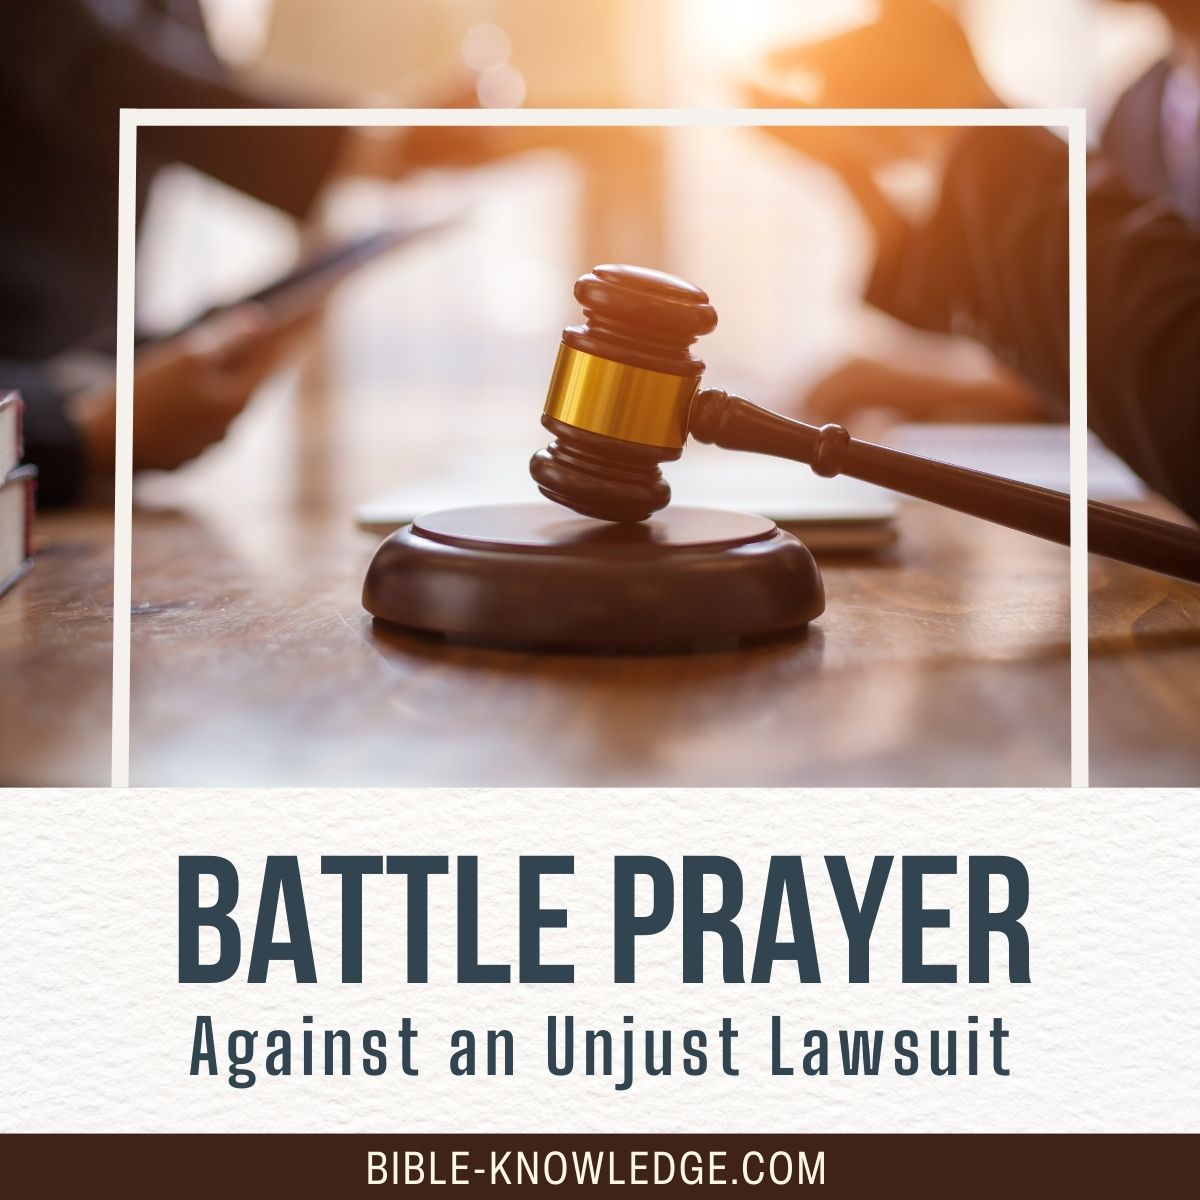 Battle Prayer Against an Unjust Lawsuit